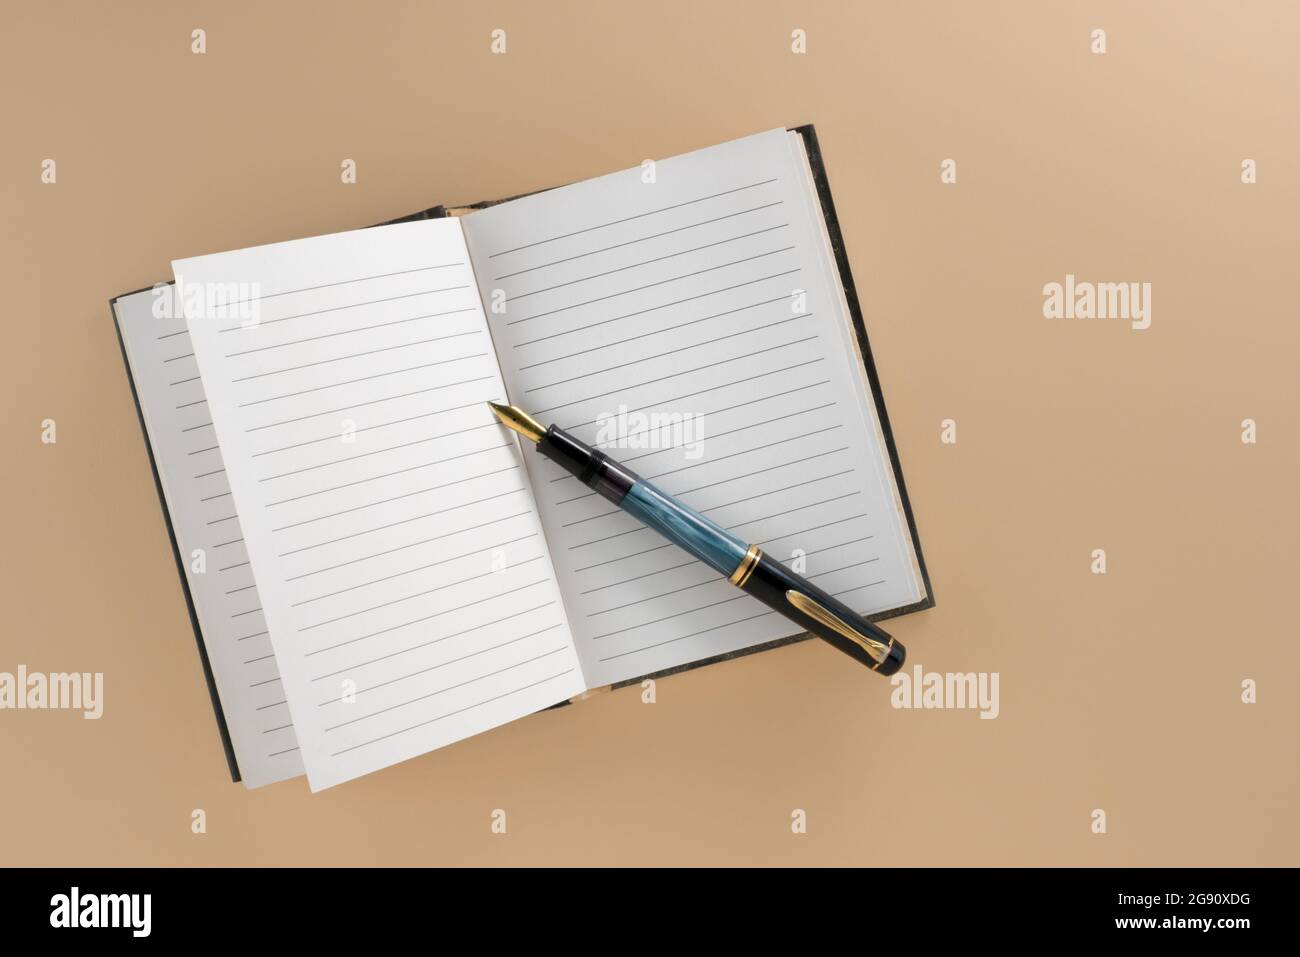 Cahier à lignes ouvertes avec ancien stylo plume isolé sur fond marron clair dans la vue de dessus, plat, espace de copie Banque D'Images